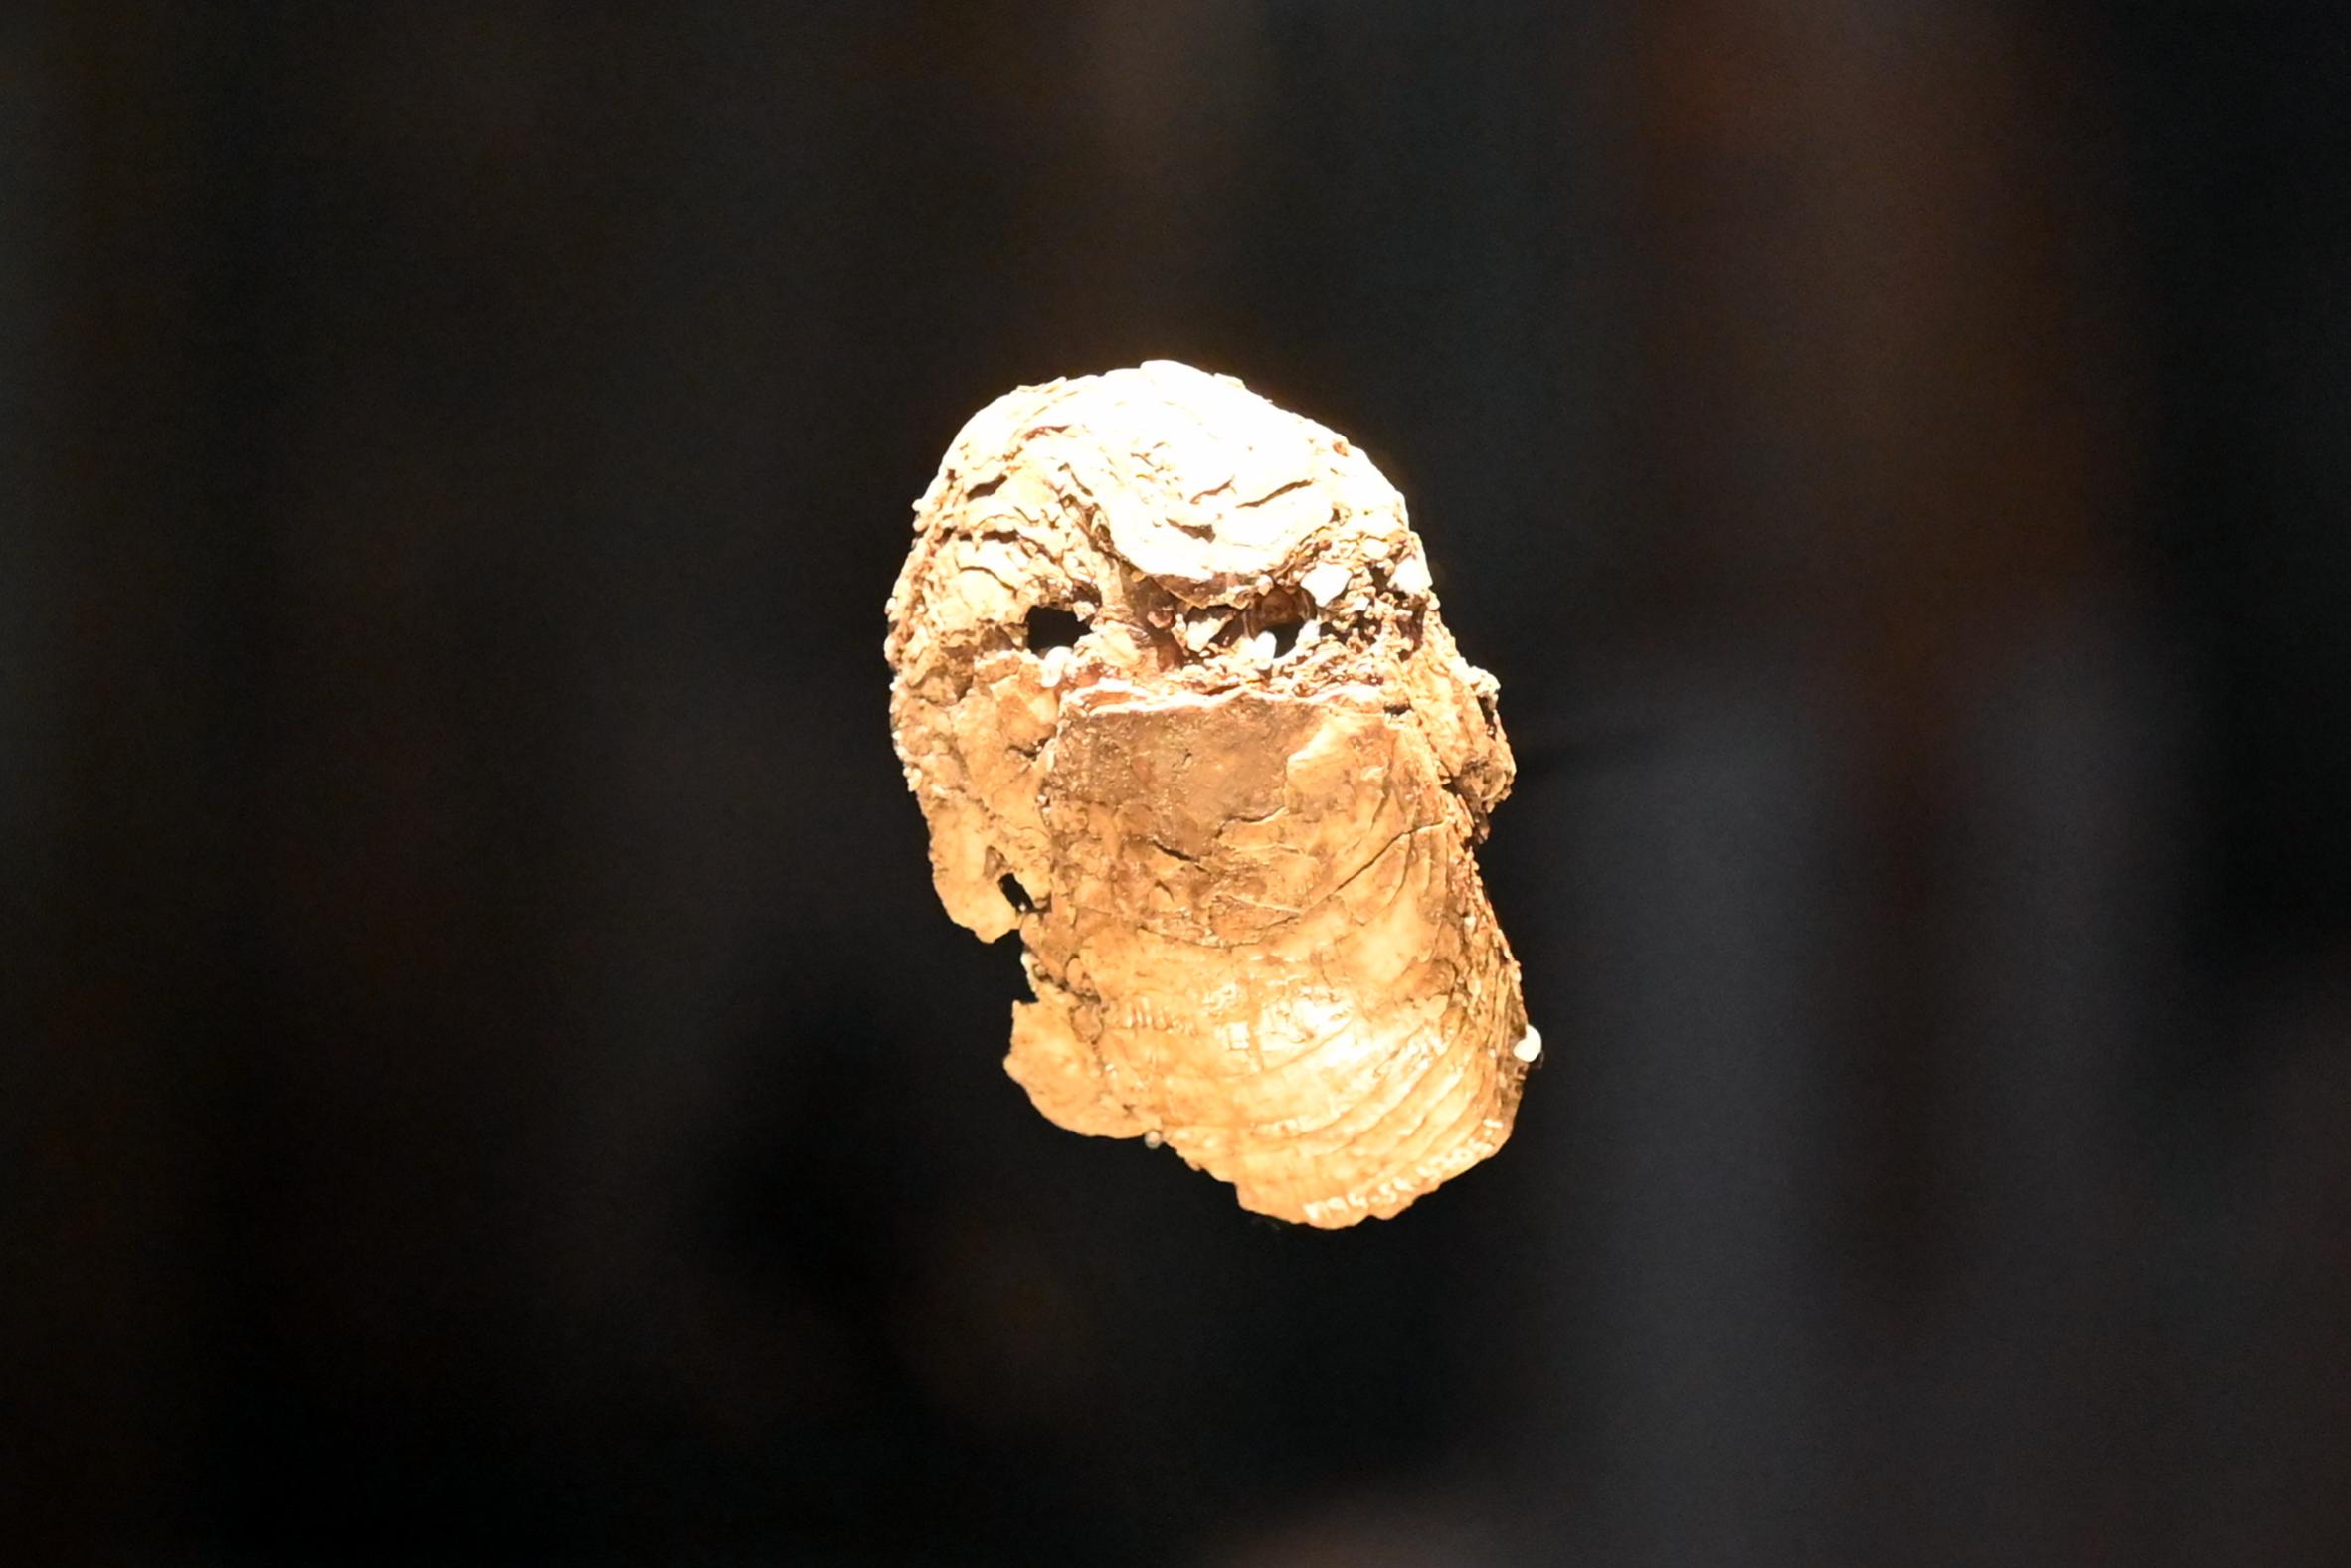 Spondylusmuschel, Neolithikum (Jungsteinzeit), 5500 - 1700 v. Chr., 5100 v. Chr., Bild 1/3